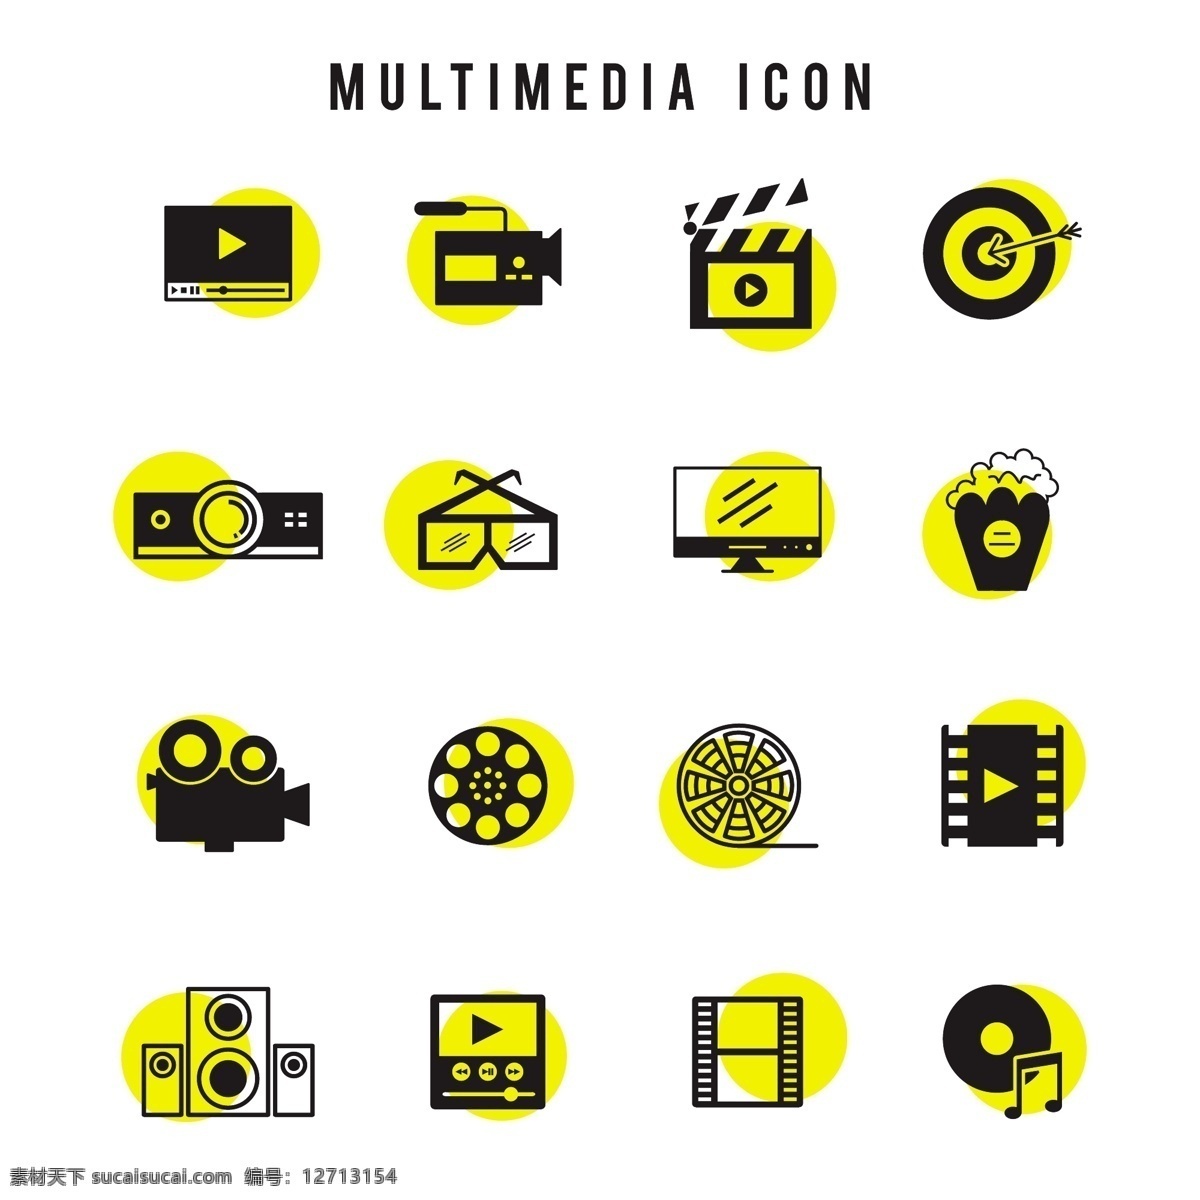 黑色 黄色 多媒体 图标 集 背景 音乐 技术 线 相机 艺术 网络 电影 剪影 数字 符号 麦克风 形状 视频 通信